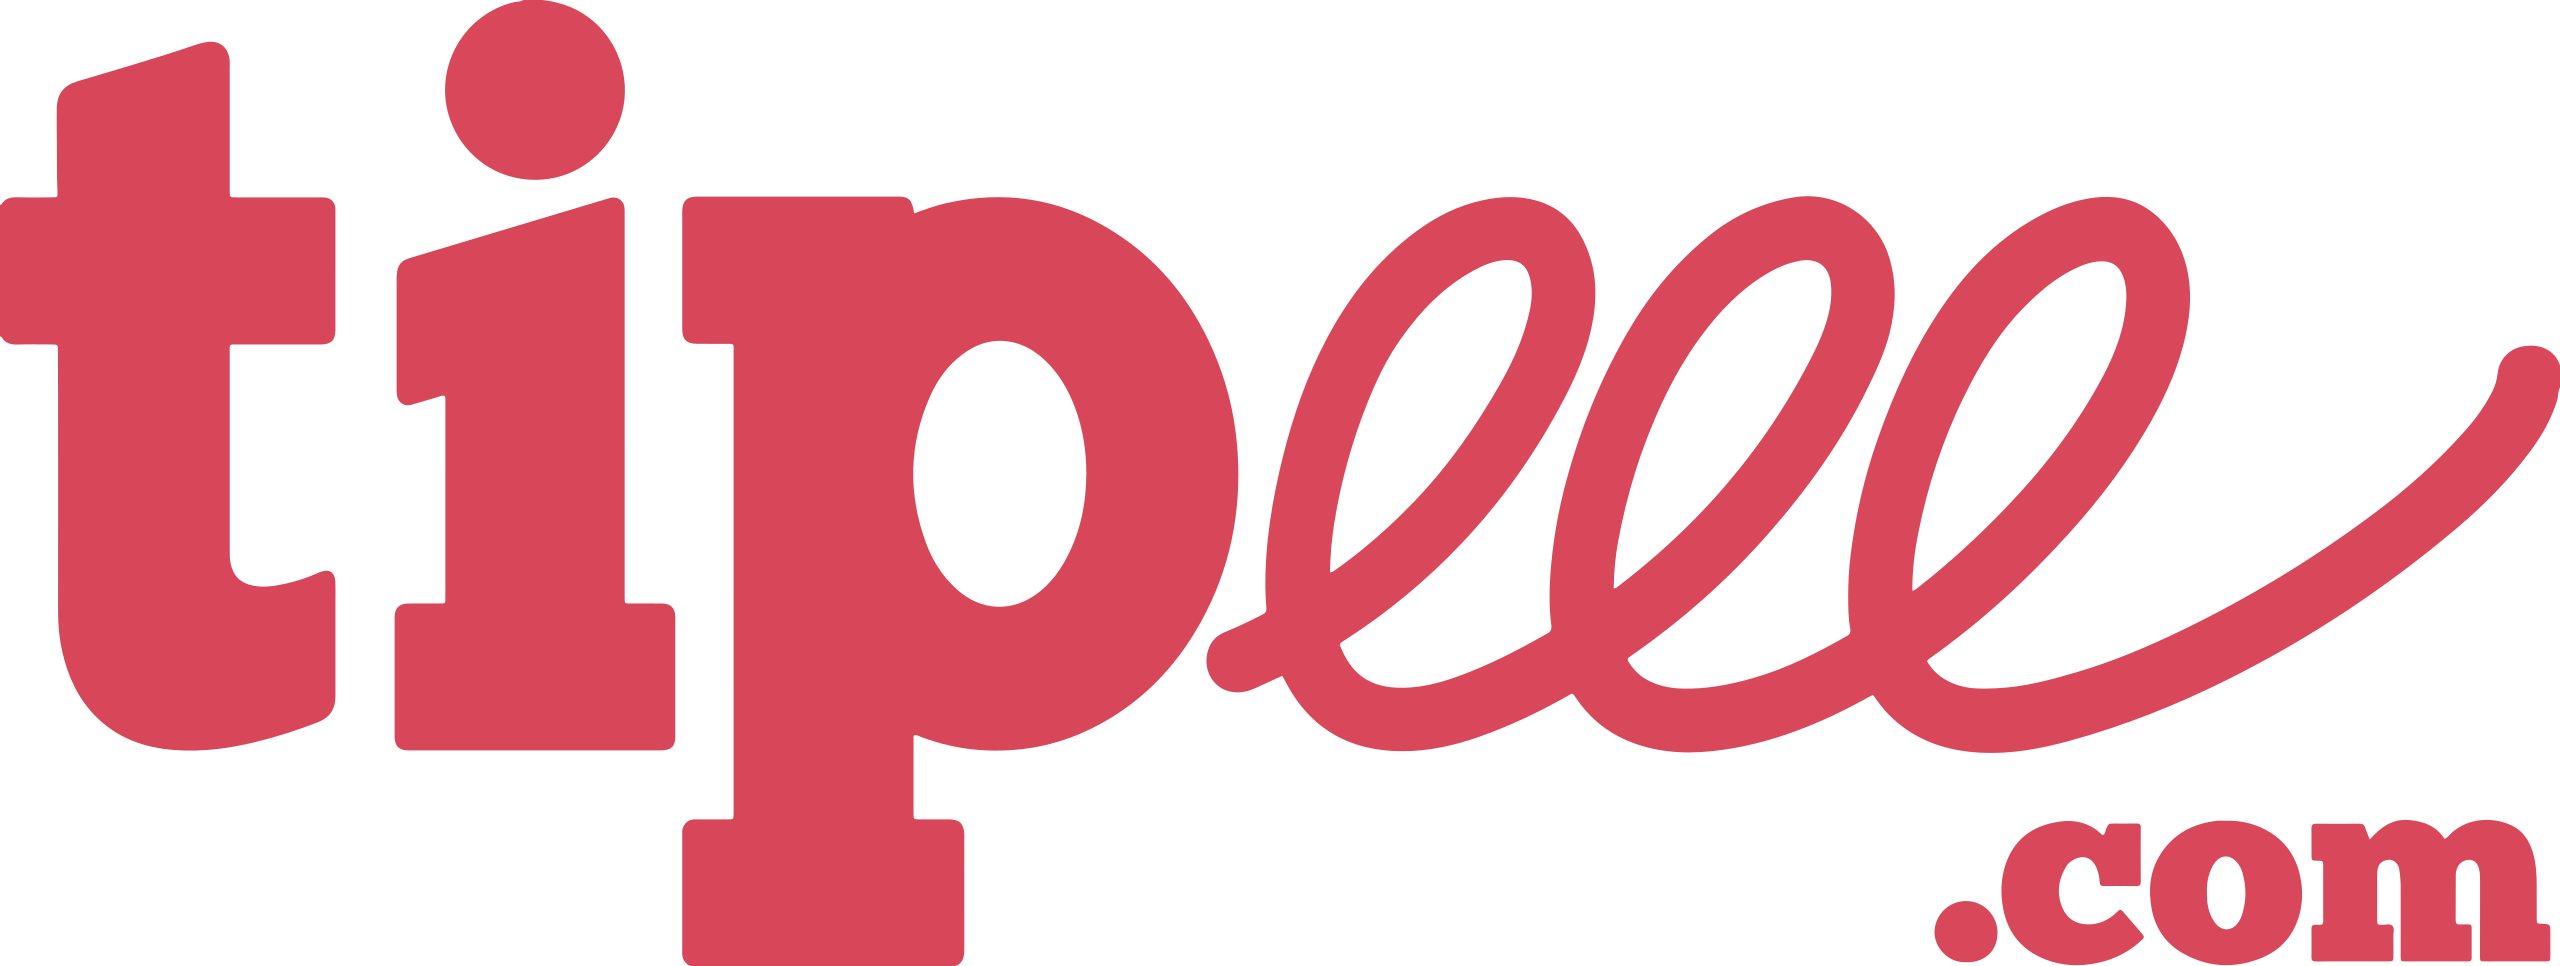 logo Tipeee.png